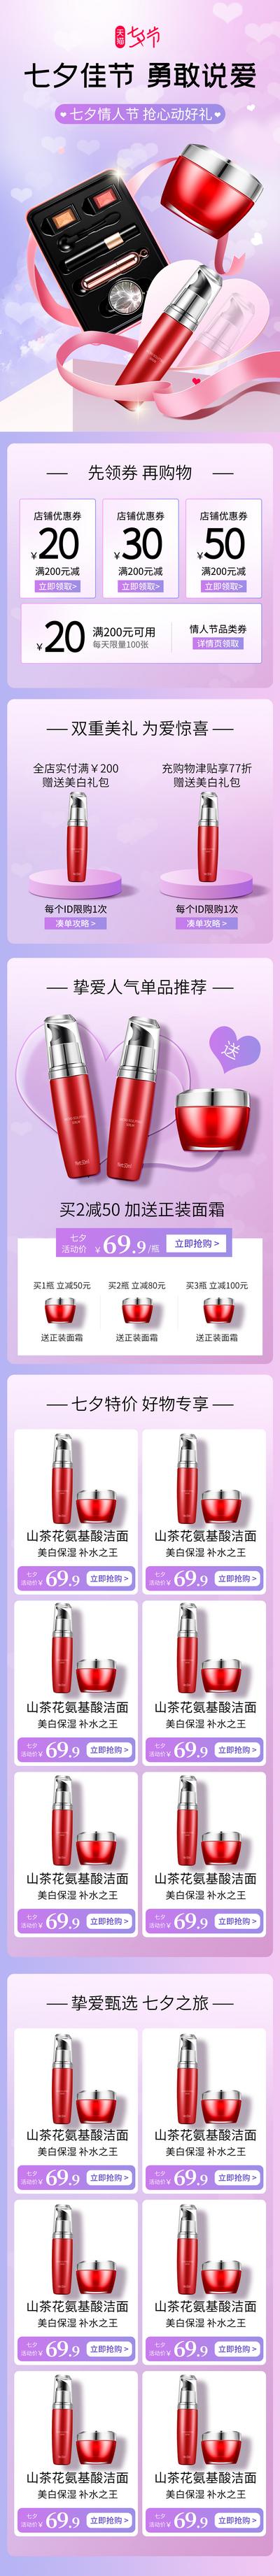 南门网 广告 海报 电商 口红 38 七夕 情人节 专题 促销